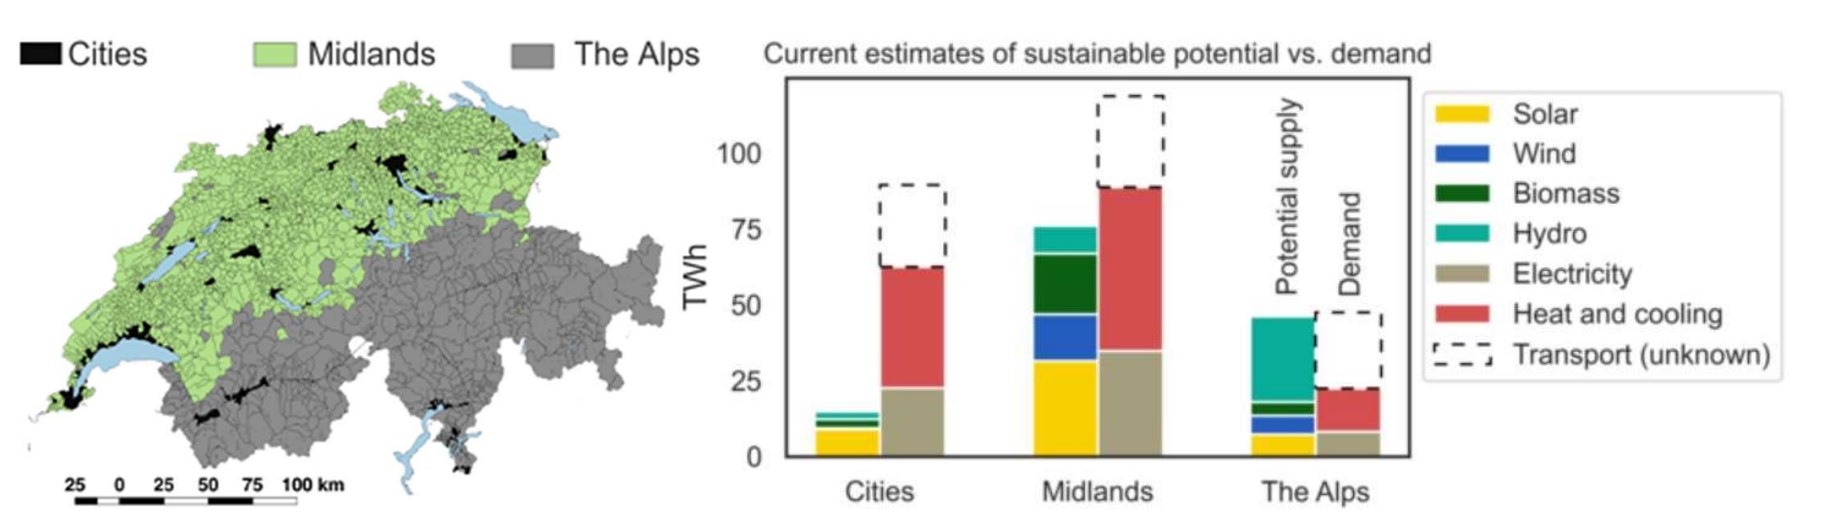 Unterschiede zwischen den nachhaltigen, technischen, erneuerbaren Energiepotenzialen und dem jährlichen Bedarf in den drei Regionen Städte, Mittelland und Alpen.